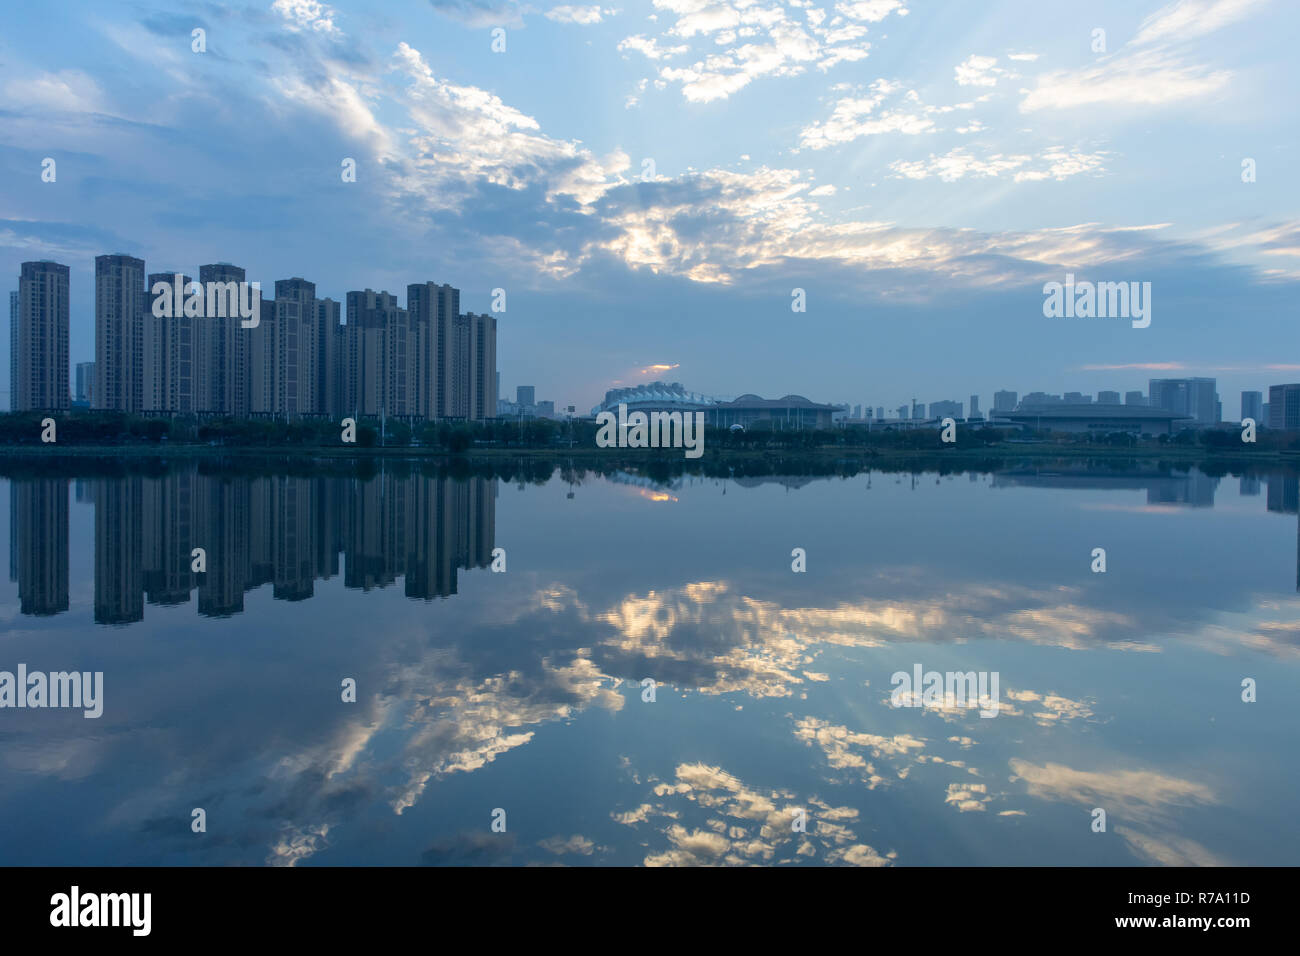 Au coucher du soleil, le beau ciel et nuages se reflète sur les eaux calmes de Wuhan, Chine sur une journée de la pollution et météo atypique. Magnifique ! Banque D'Images